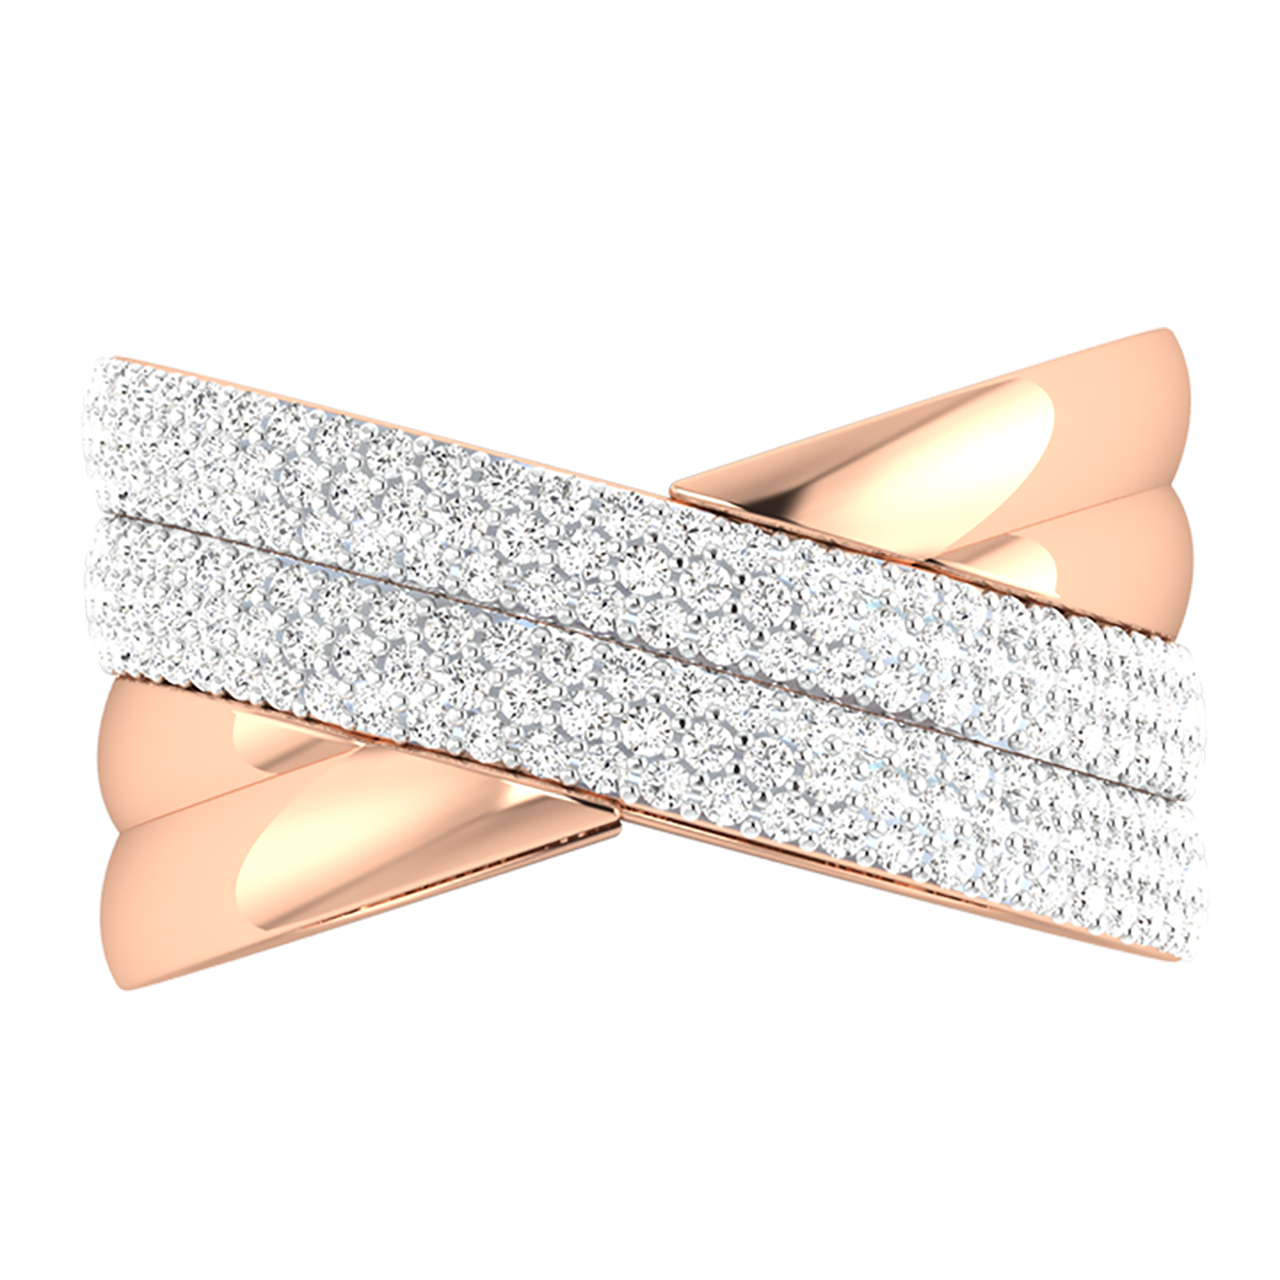 Cross Round Diamond Engagement Ring